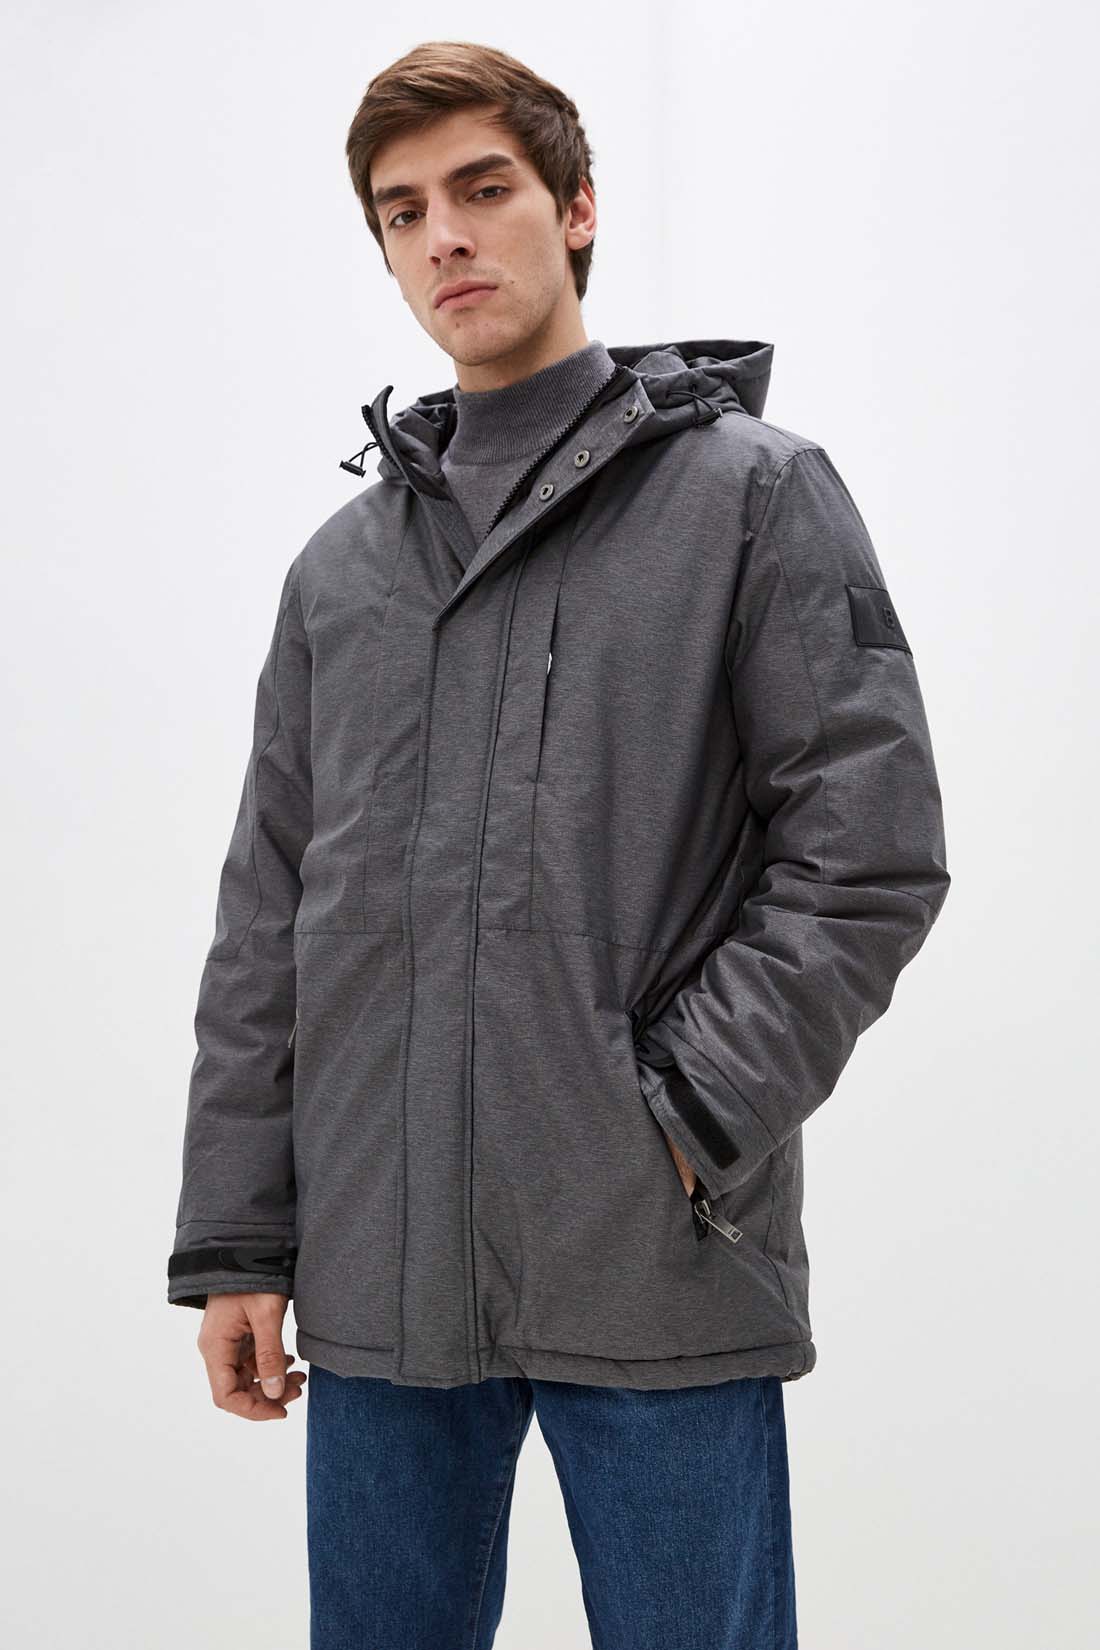 Куртка (Эко пух) (арт. baon B541505), размер XXL, цвет marengo melange#ebeeed